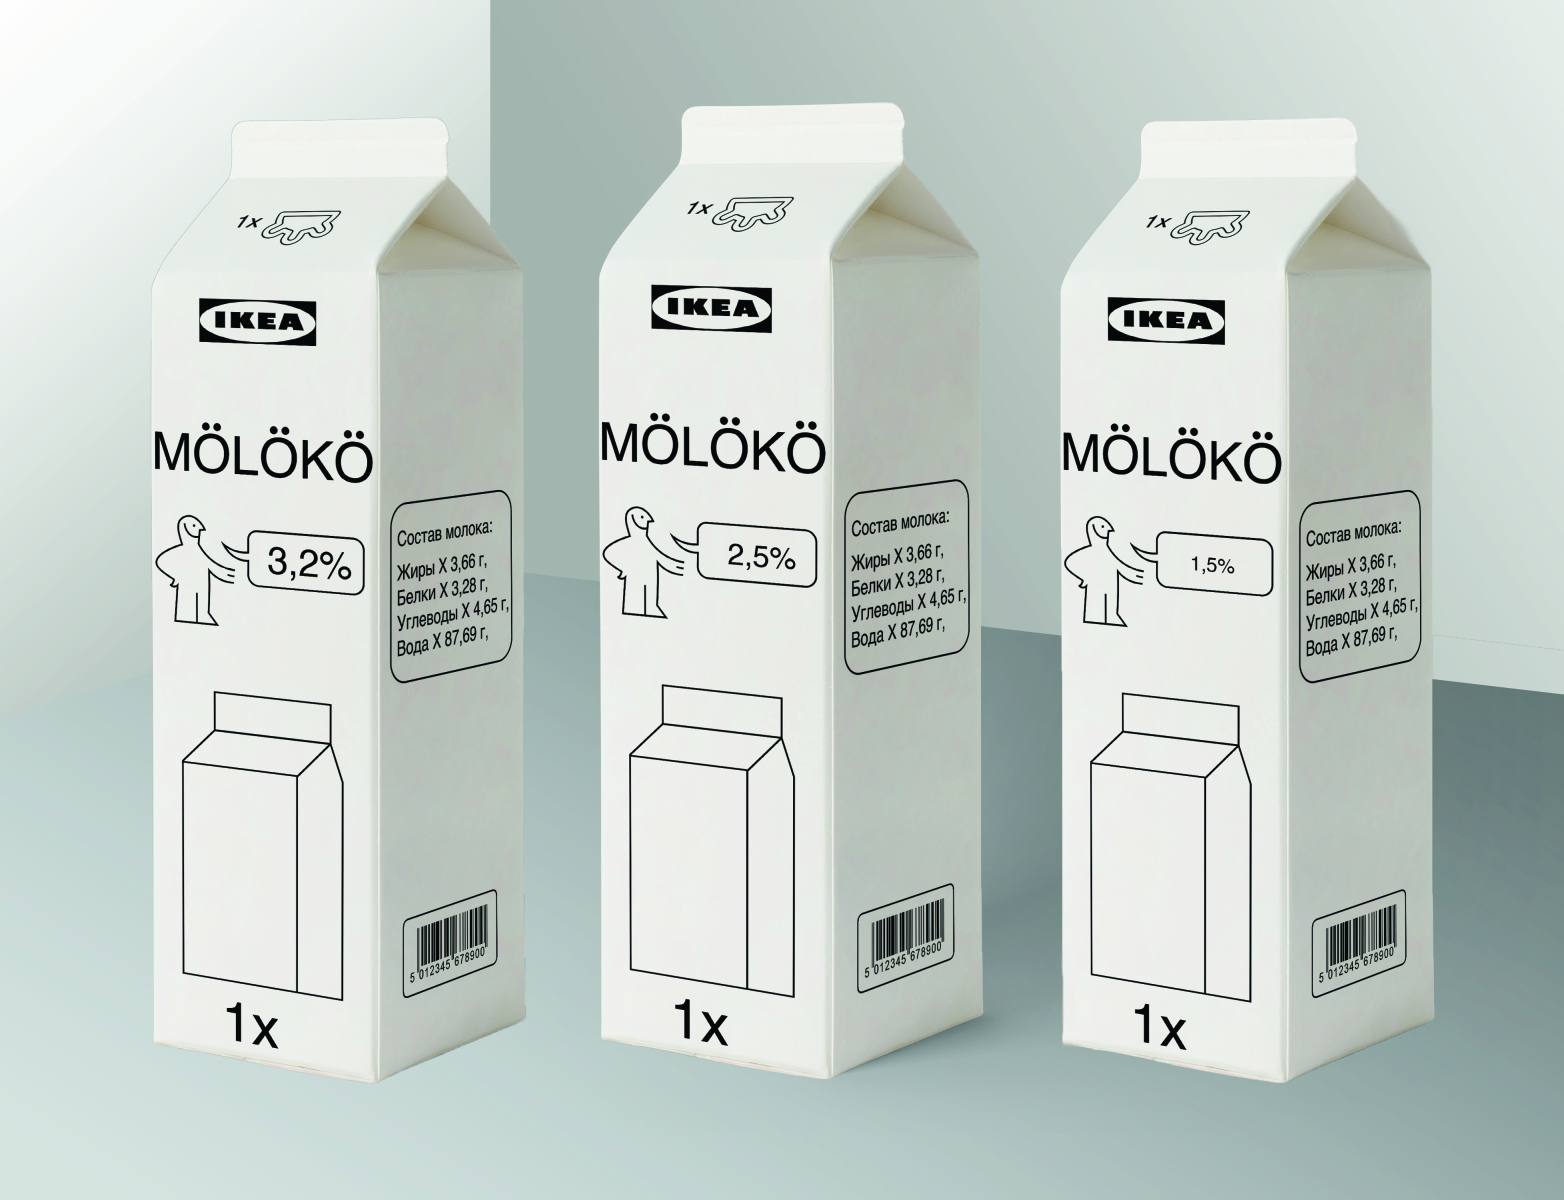 фото молока в коробке